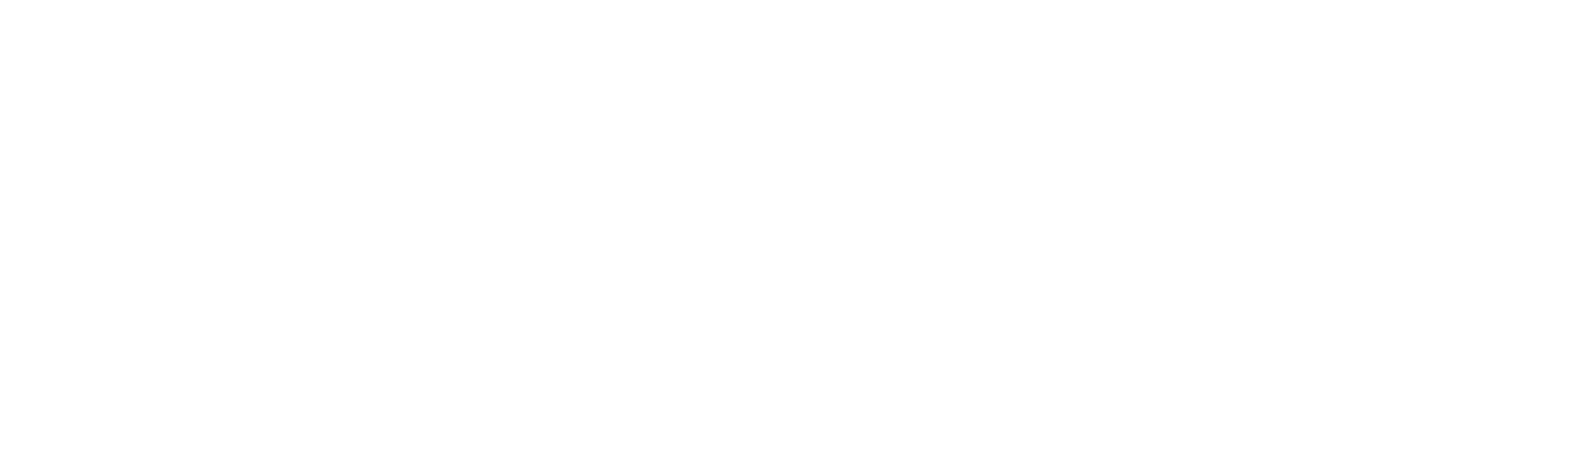 Lucid Diagnostics logo large for dark backgrounds (transparent PNG)